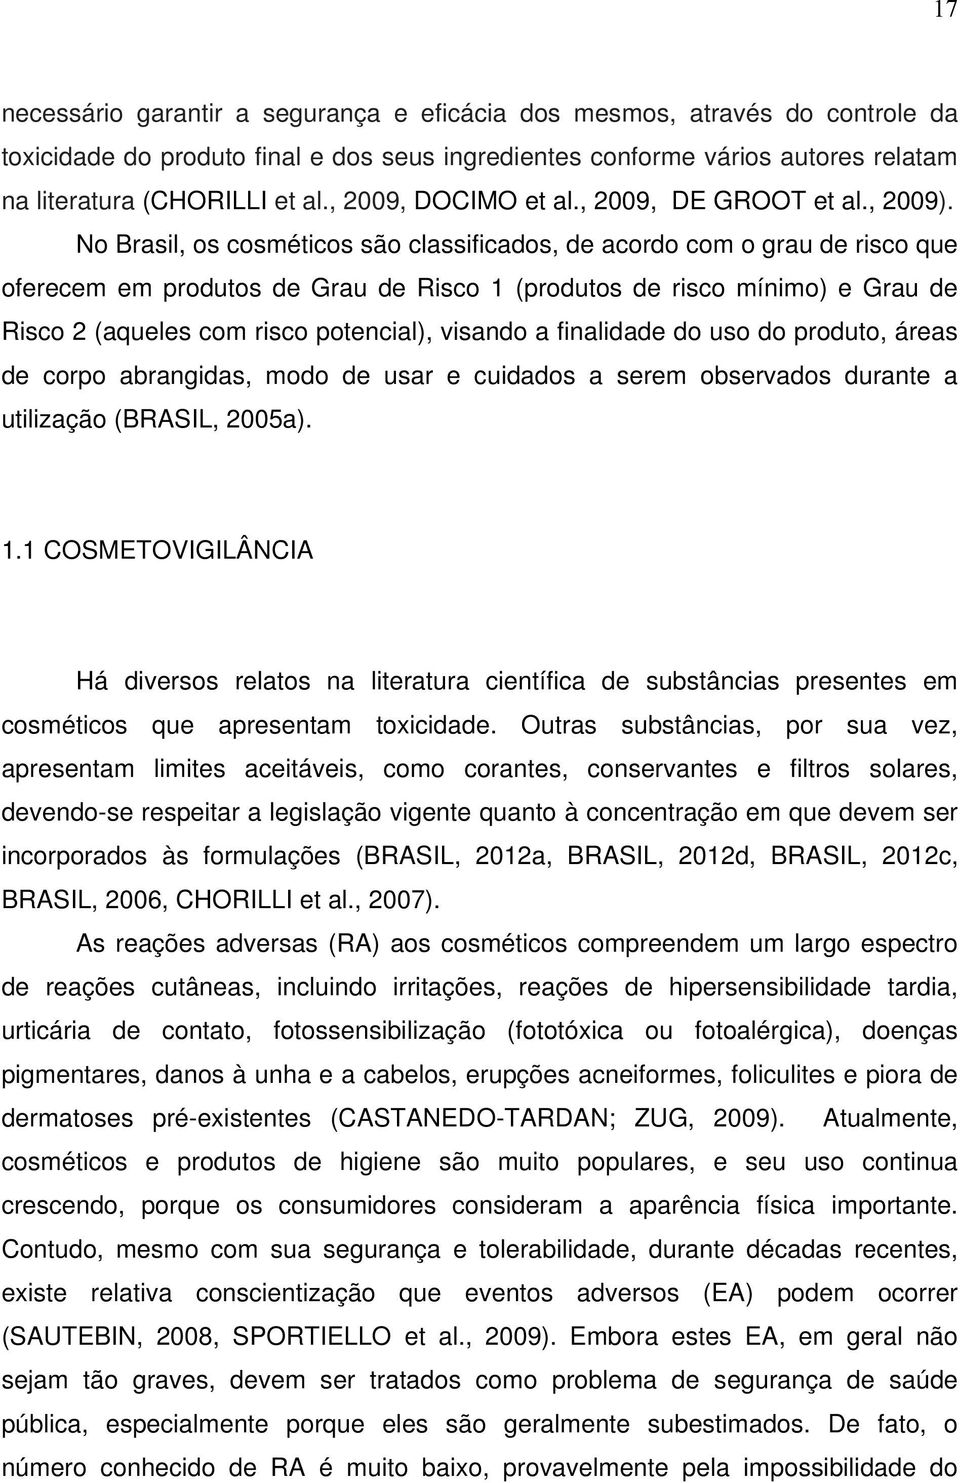 No Brasil, os cosméticos são classificados, de acordo com o grau de risco que oferecem em produtos de Grau de Risco 1 (produtos de risco mínimo) e Grau de Risco 2 (aqueles com risco potencial),